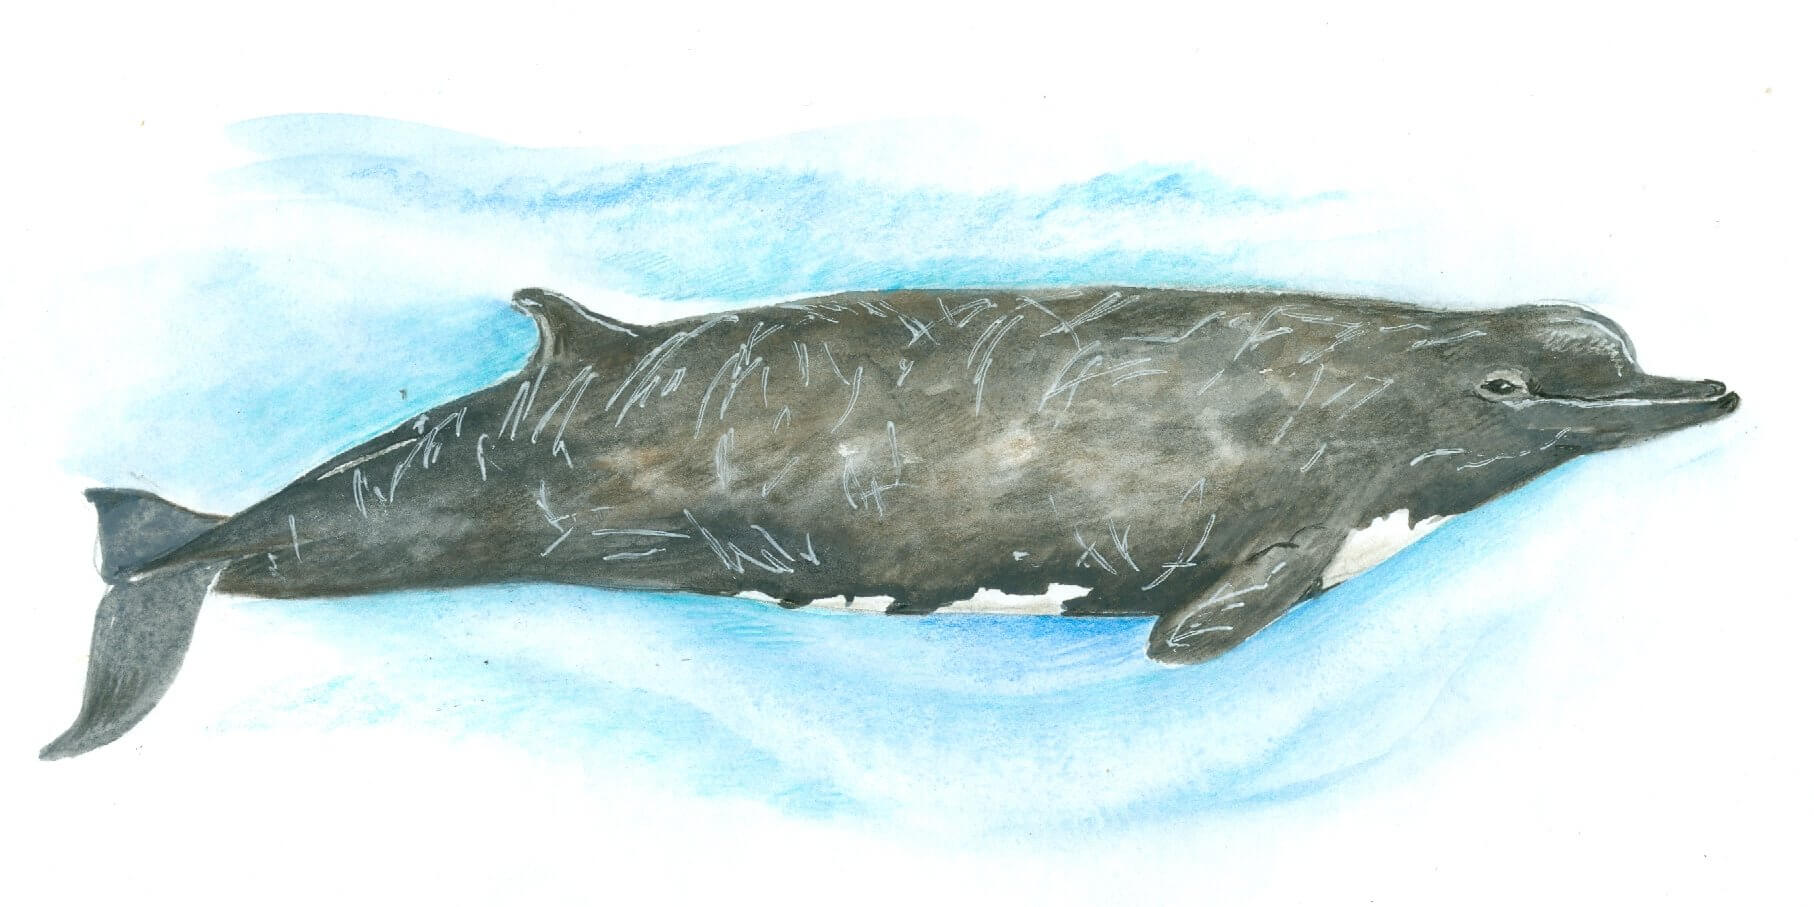 Калан по-англійськи «sea otter», що перекладається як «морська видра», що зрозуміло, адже обидва види відносяться до сімейства куницевих і підродини видрових